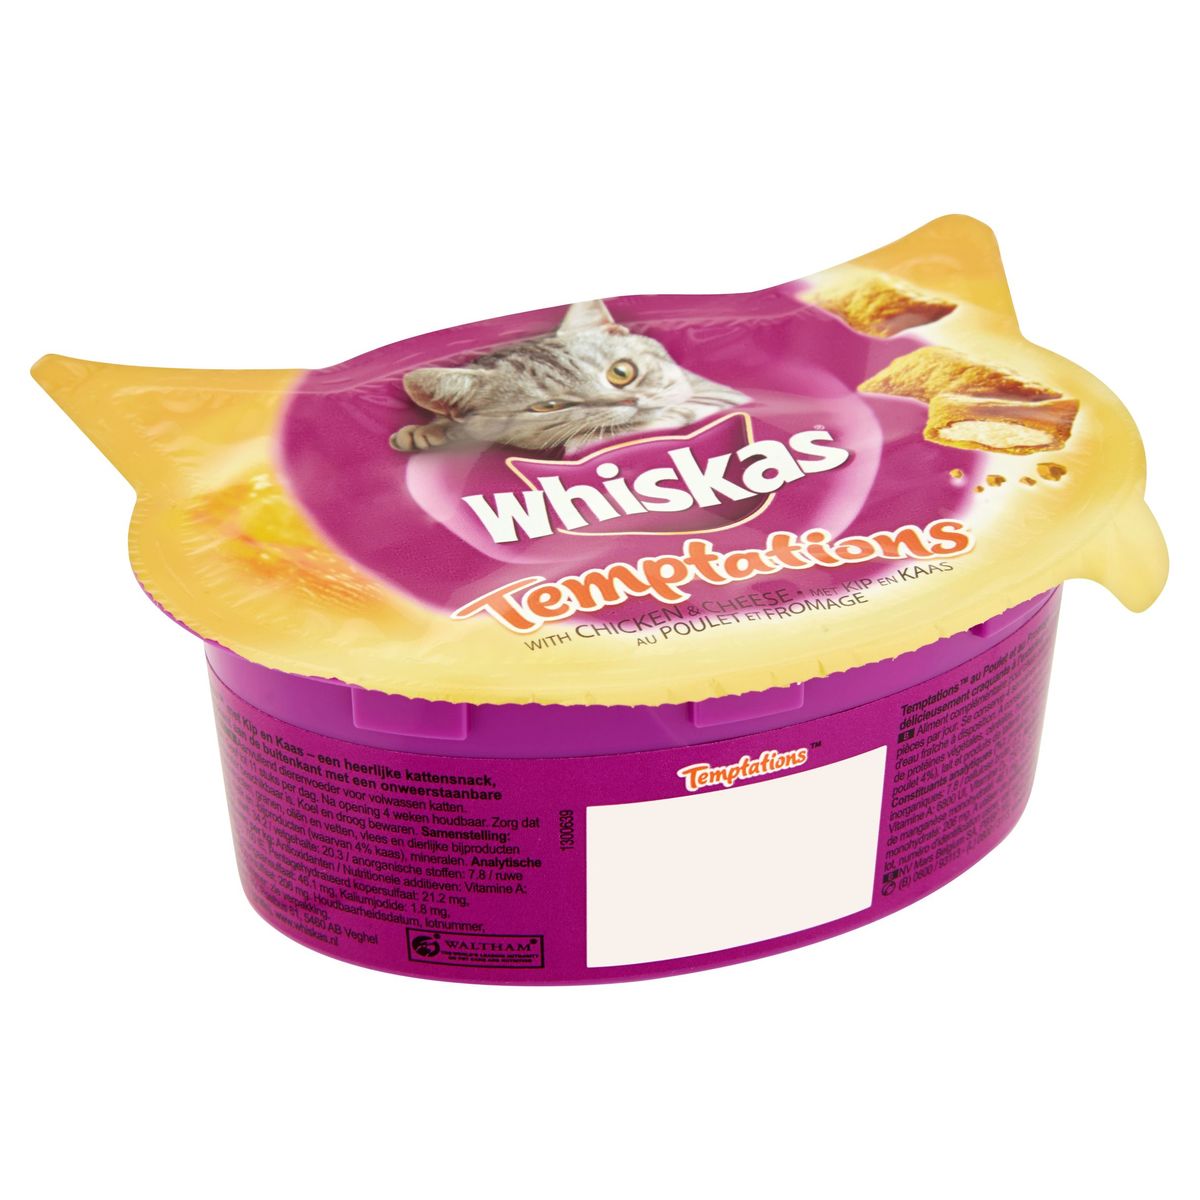 Whiskas Temptations Snack Chat au Poulet et Fromage 60 g